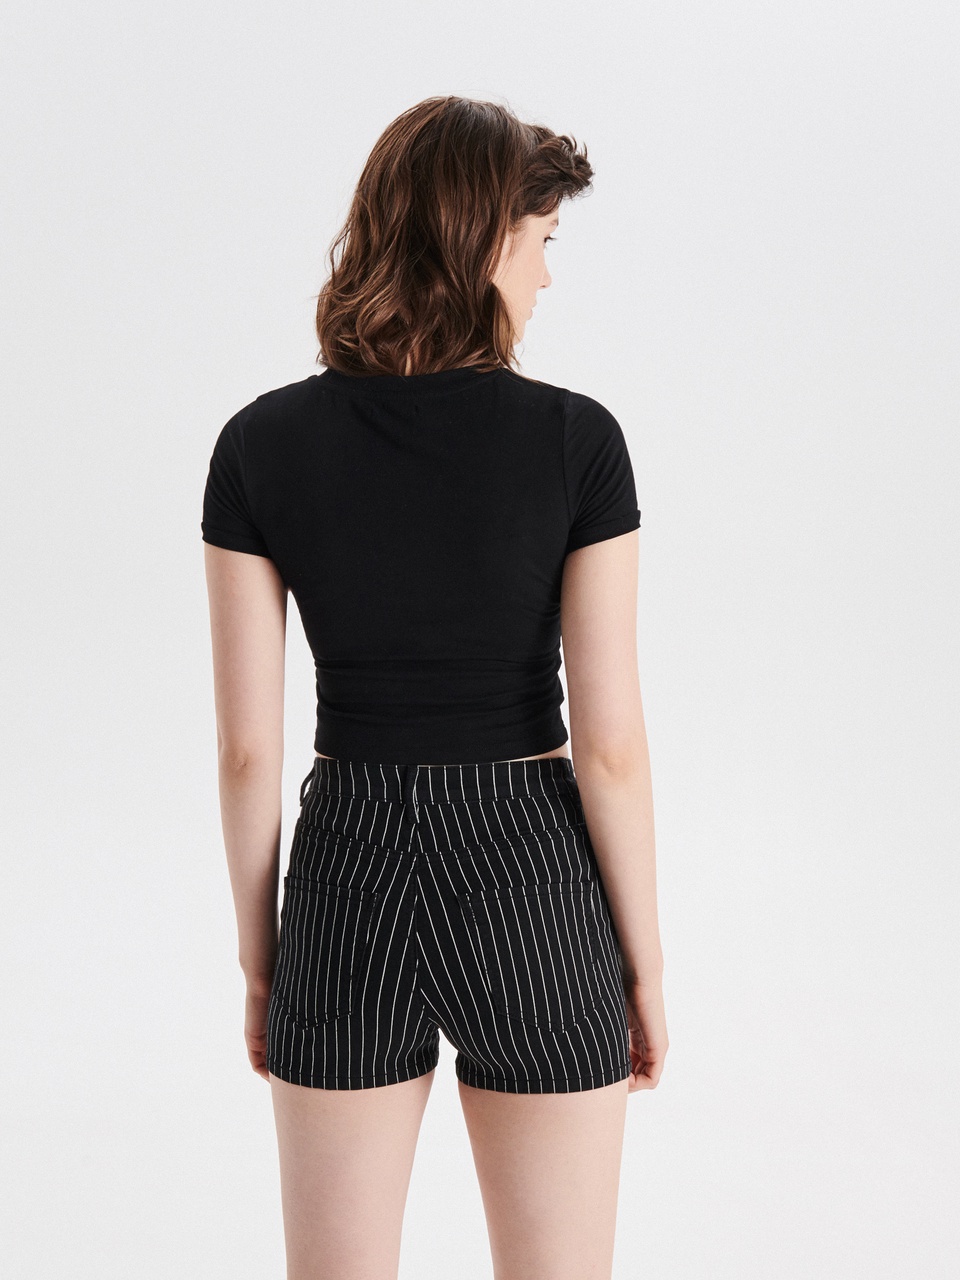 Джинсовые шорты high waist - 999 ₽, заказать онлайн.